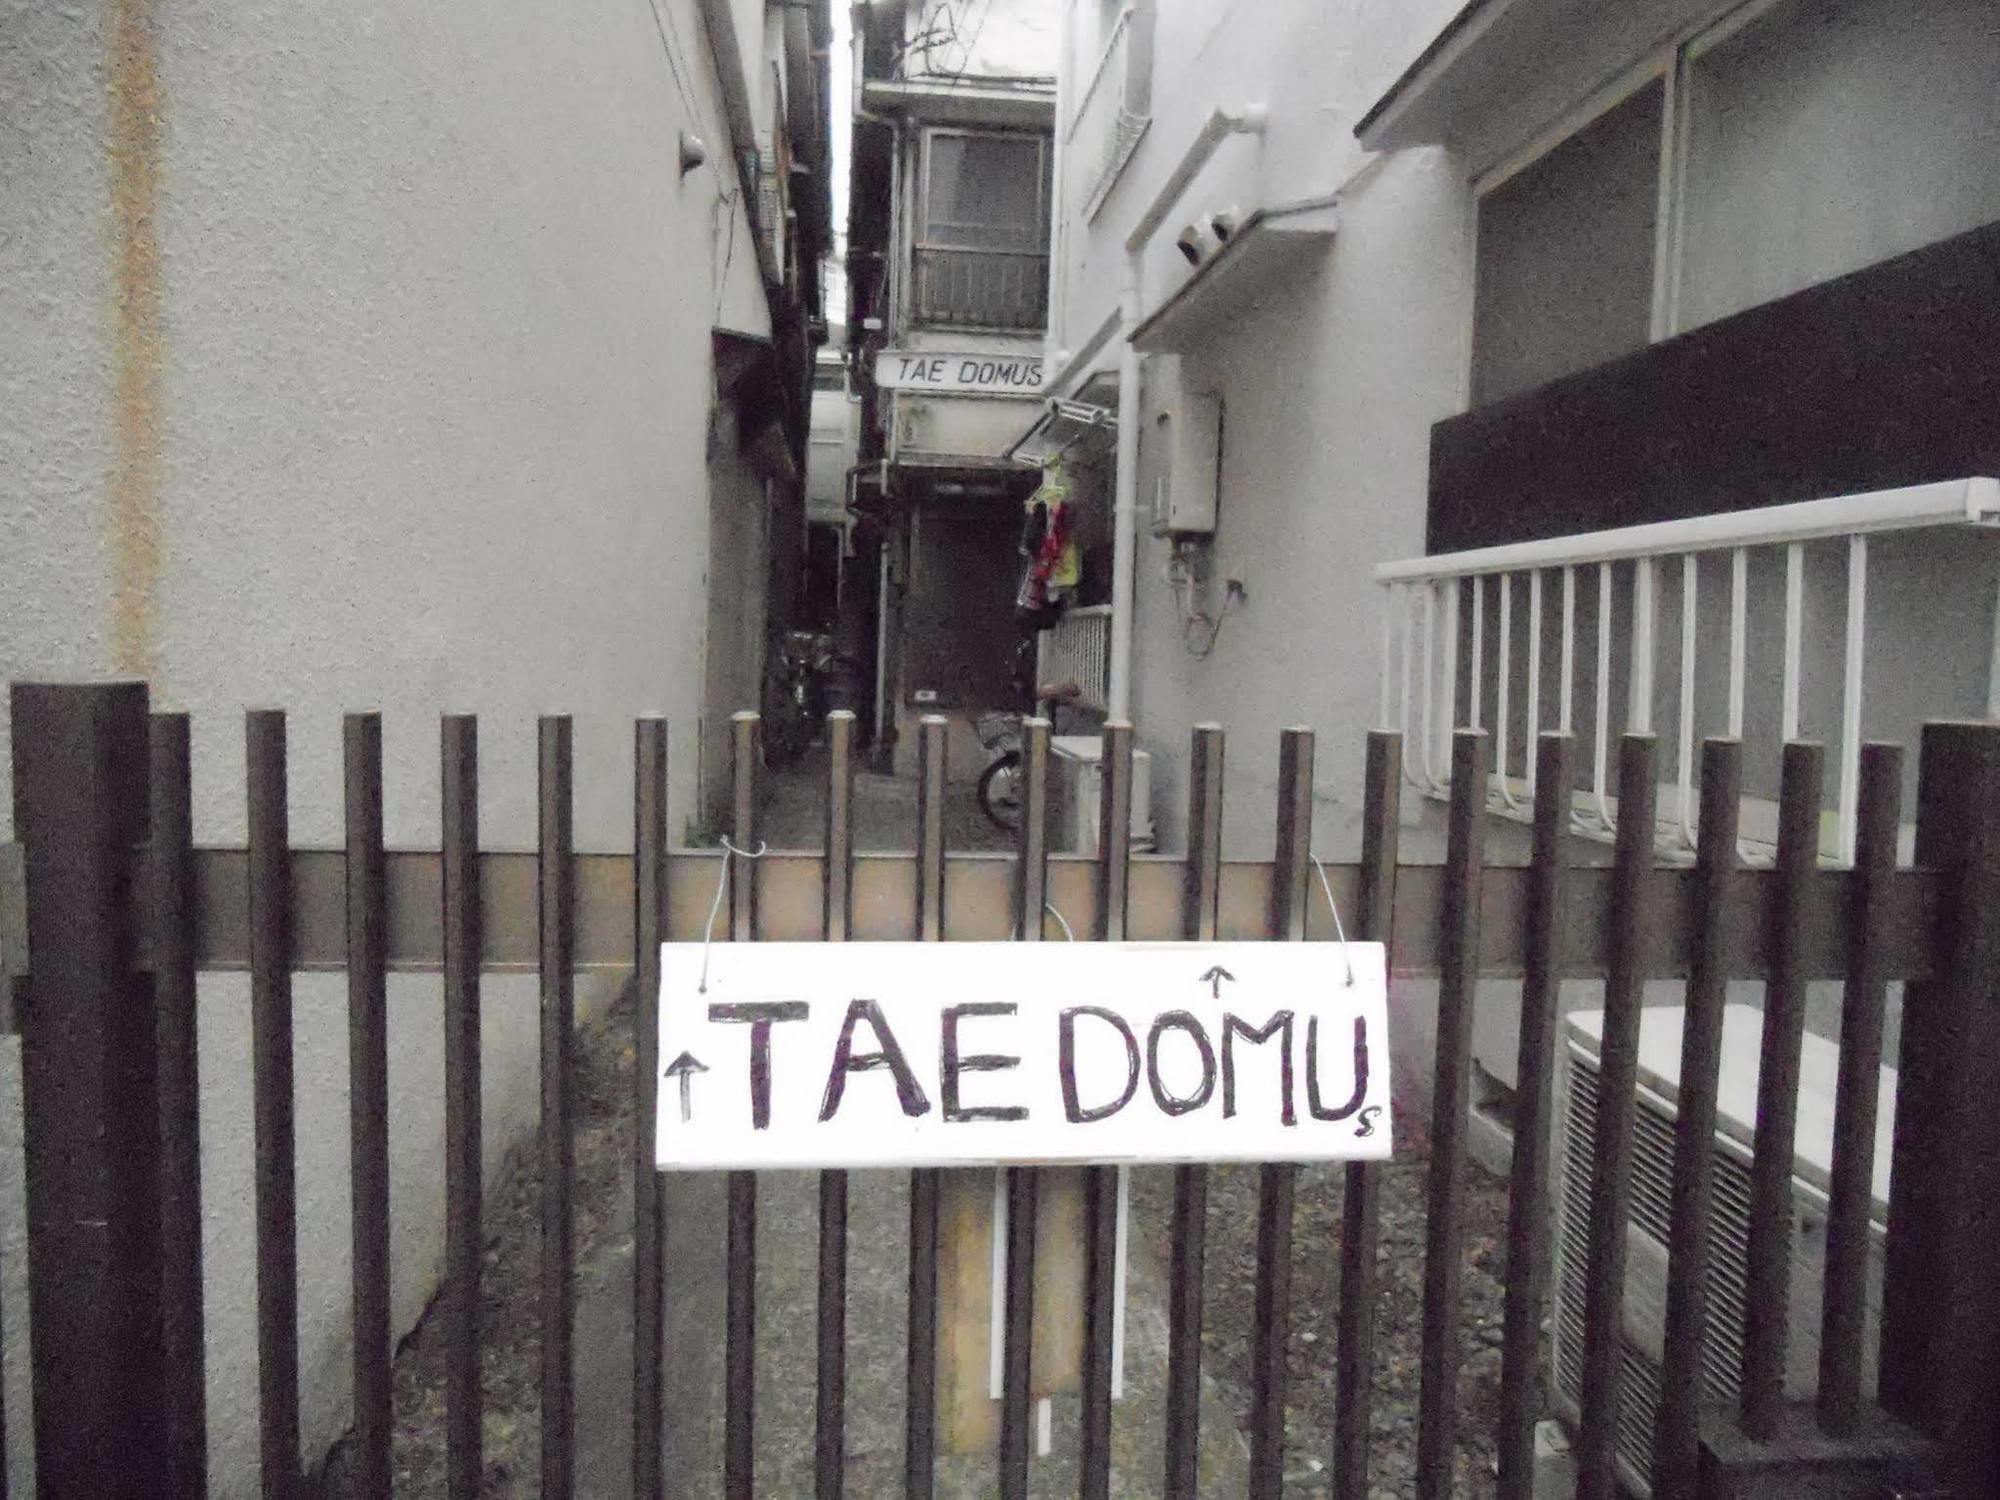 Tae Domus Apartment 東京都 外观 照片